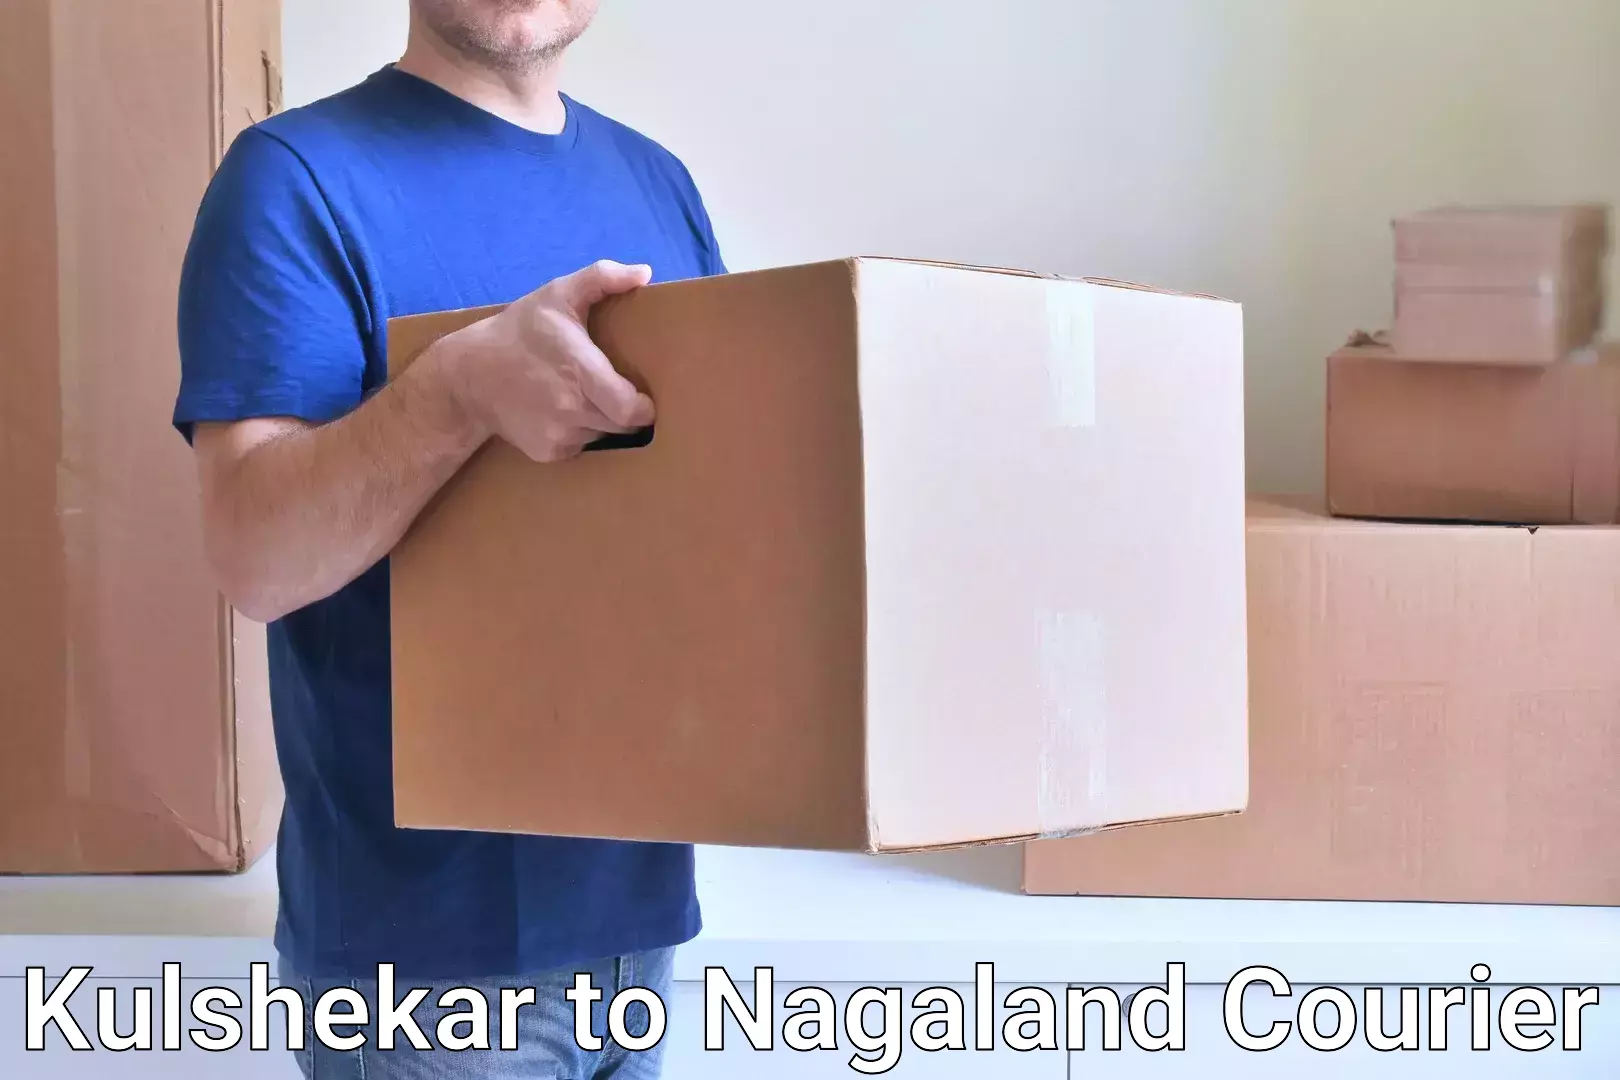 Urgent courier needs Kulshekar to Nagaland